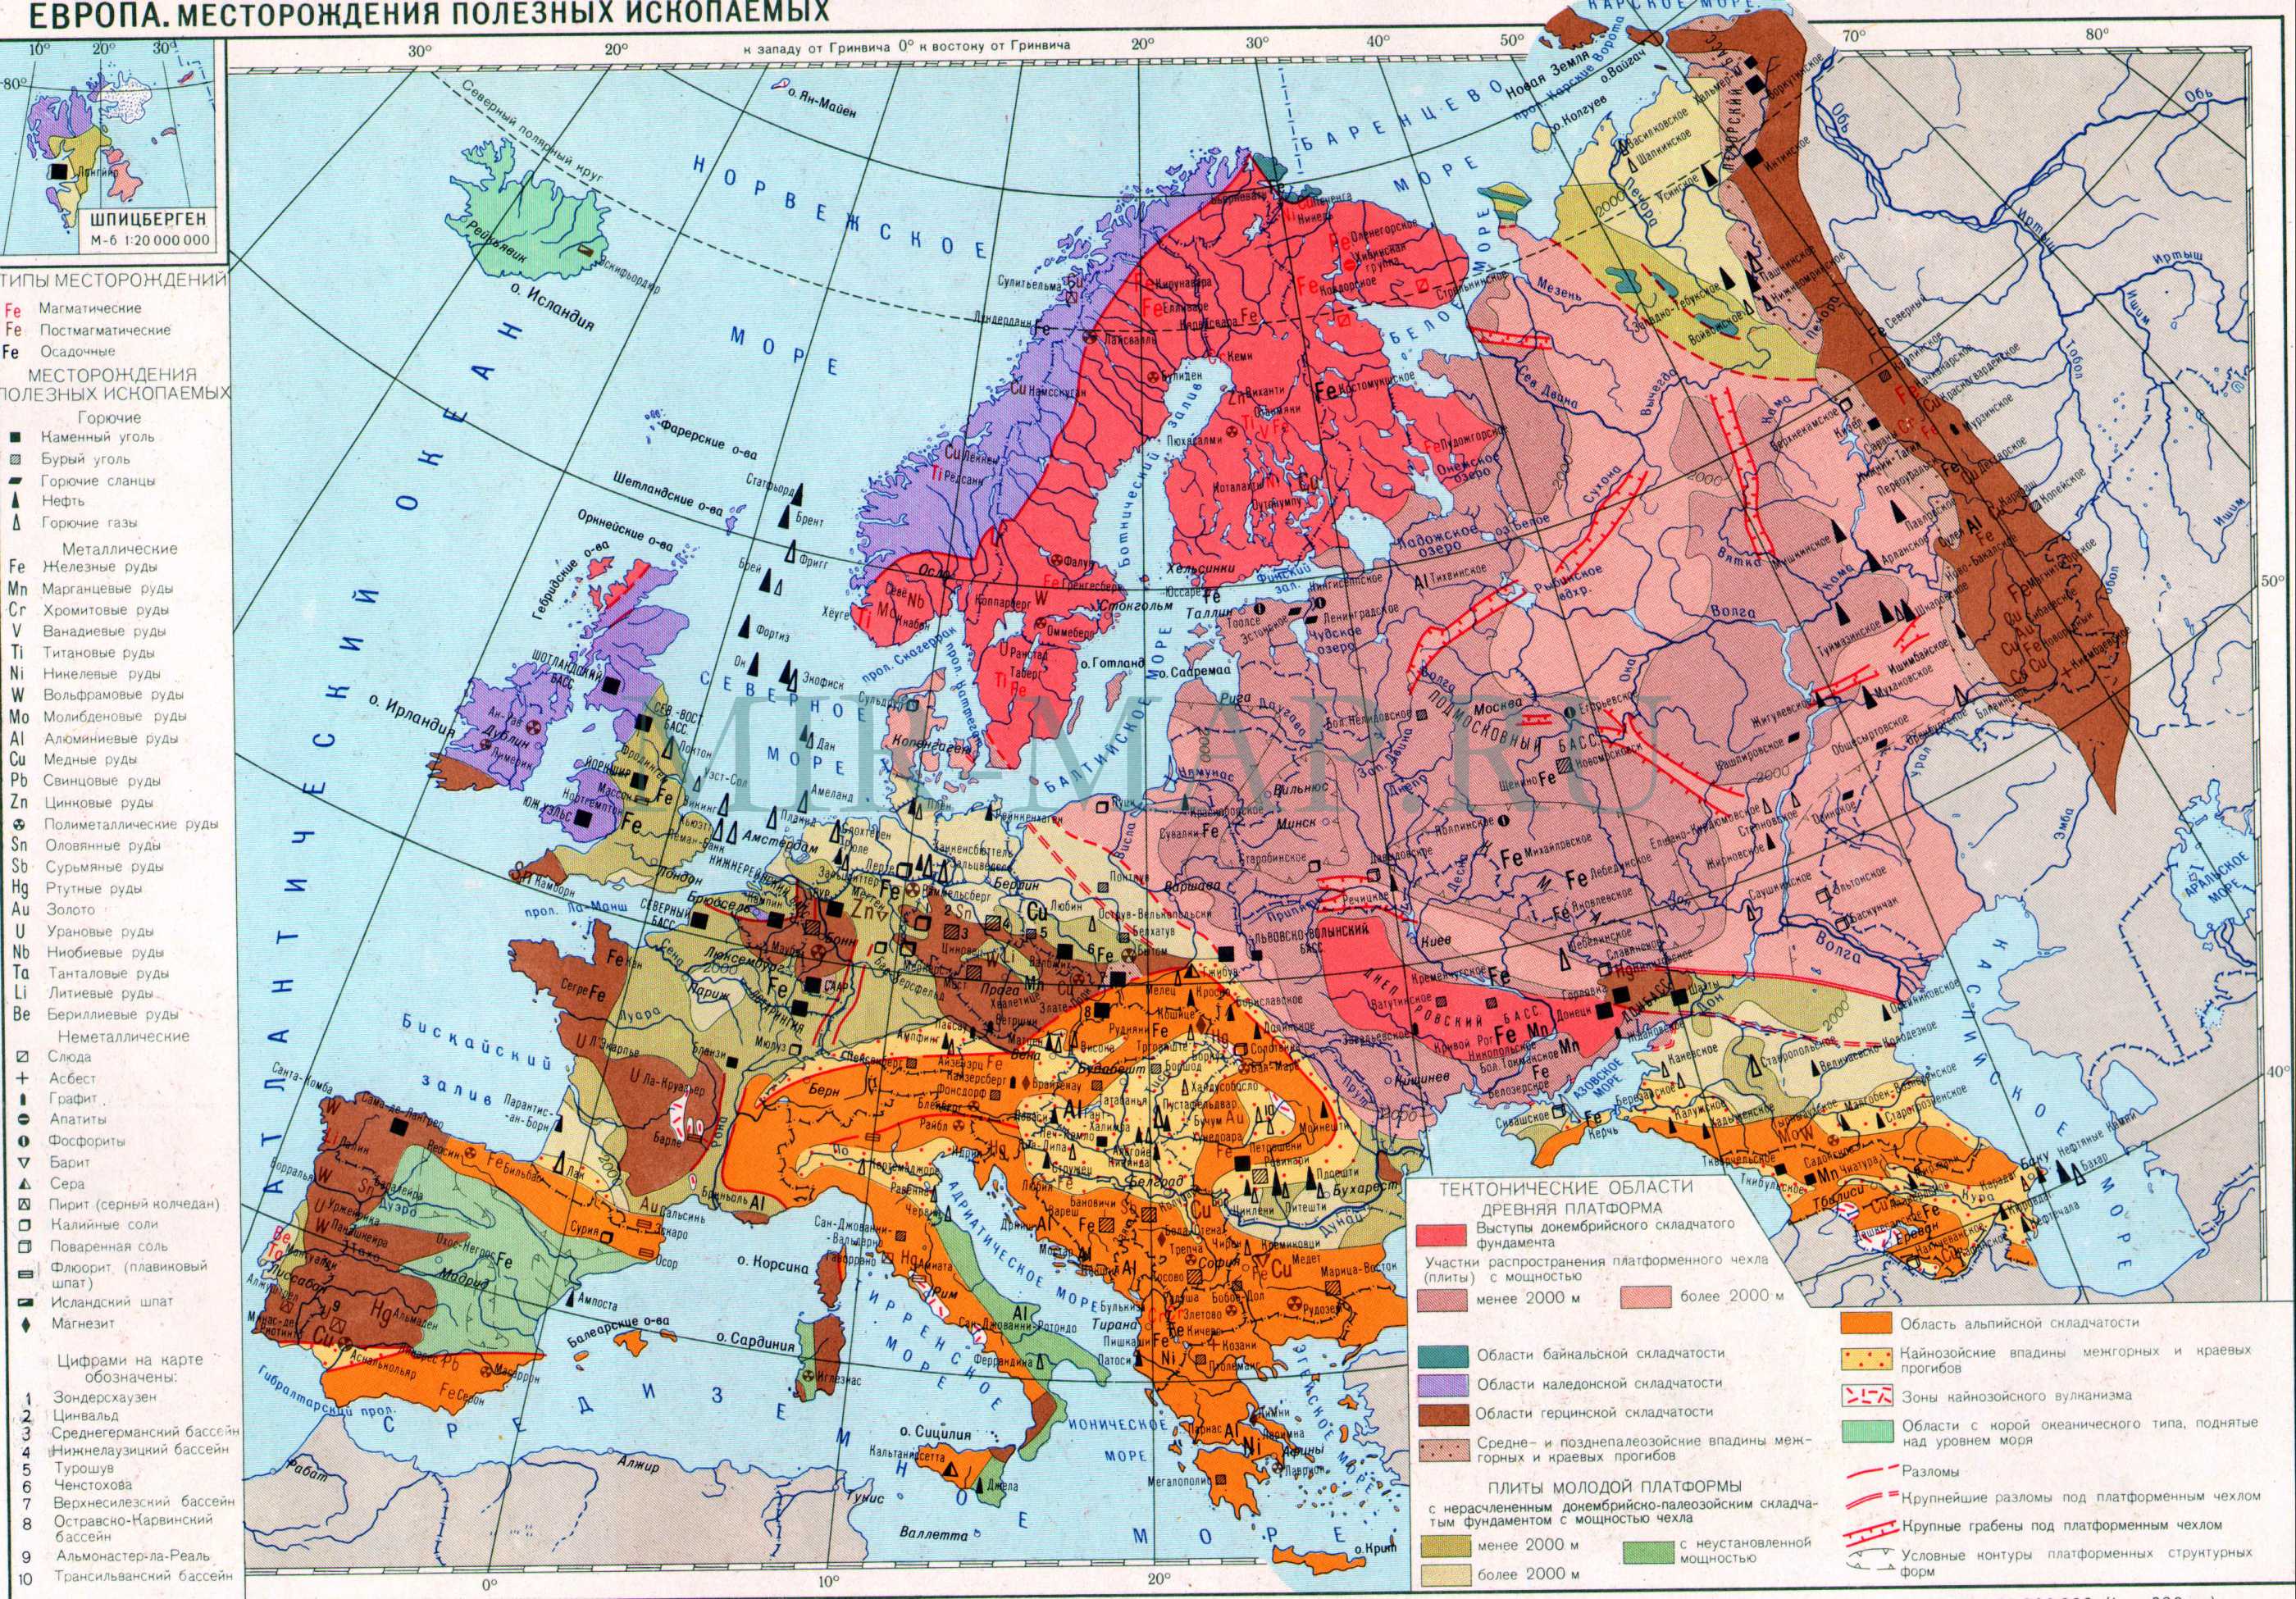 Карта месторождений полезных ископаемых Европы. Карта месторождений Европы, A0 - 